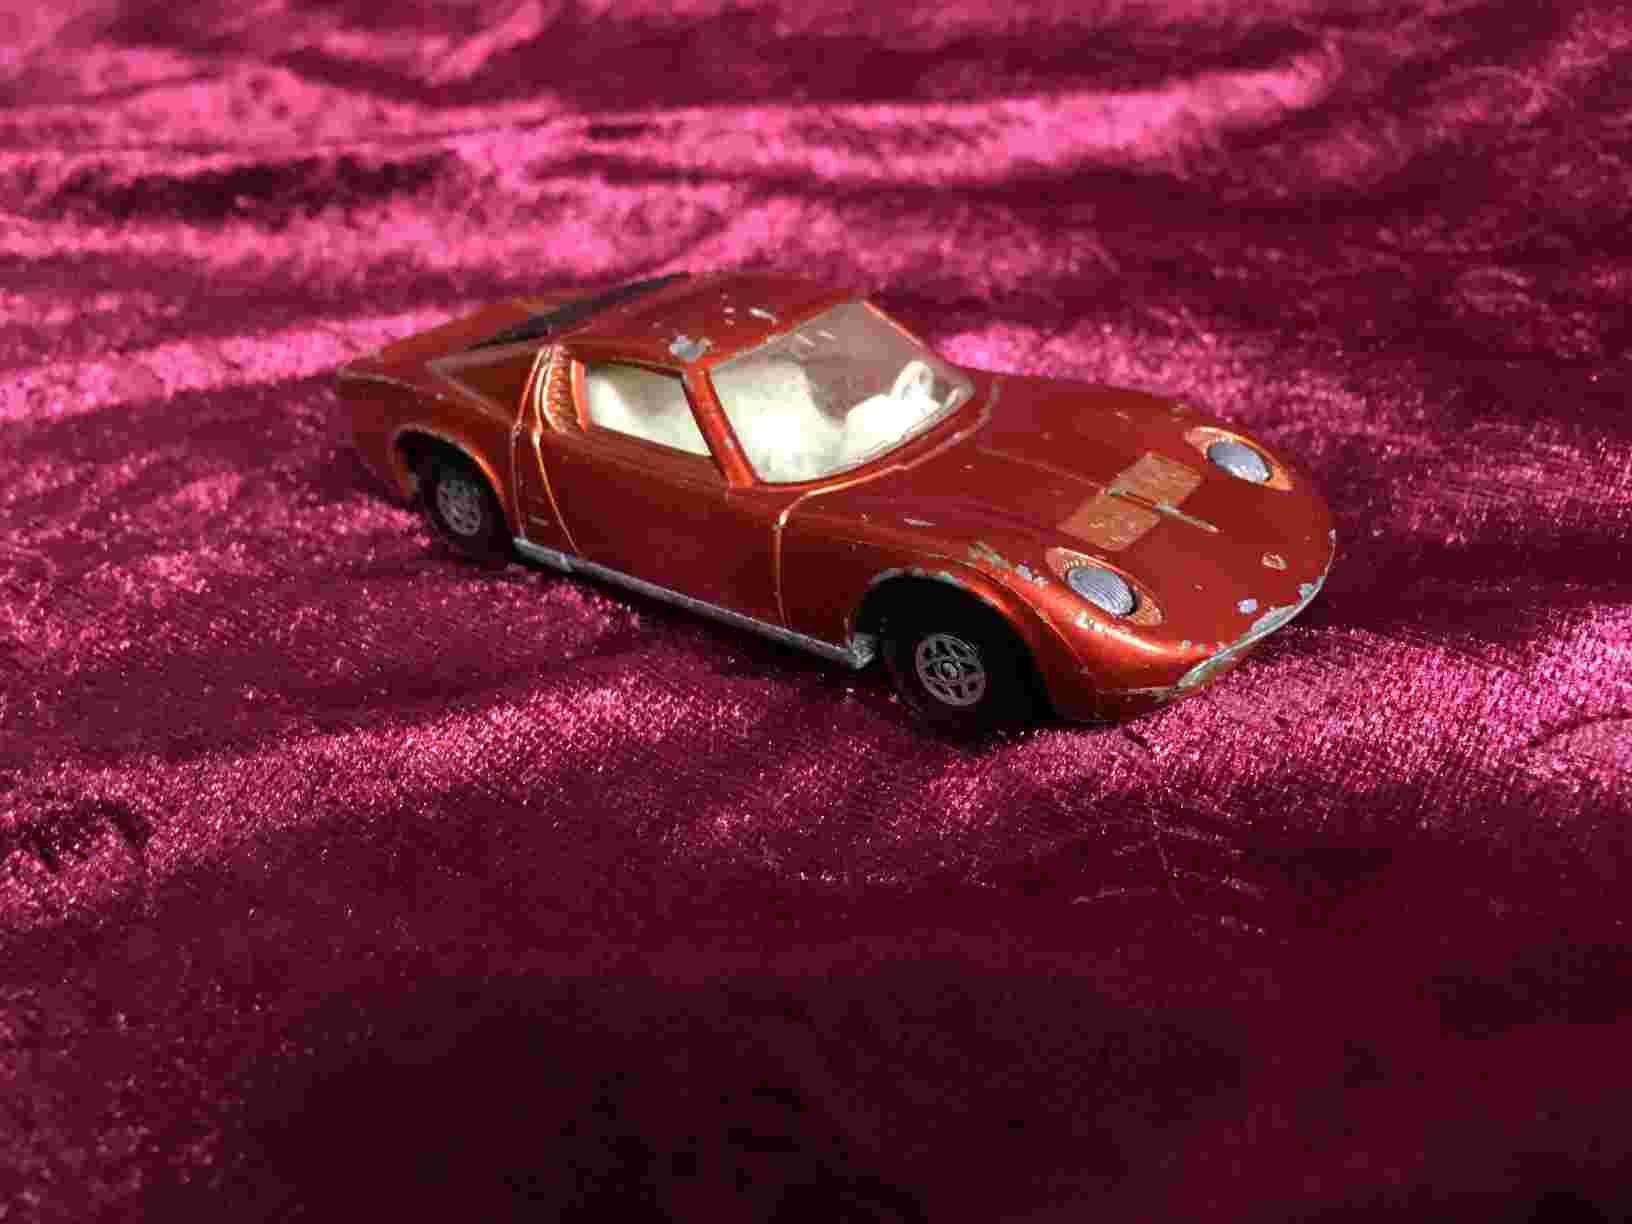 Legetøjsbil - Lamborghini Miura 1972 i flot rød farve. Bilen har været brugt og bærer præg af sjov leg. Pris: 75,- Kr.